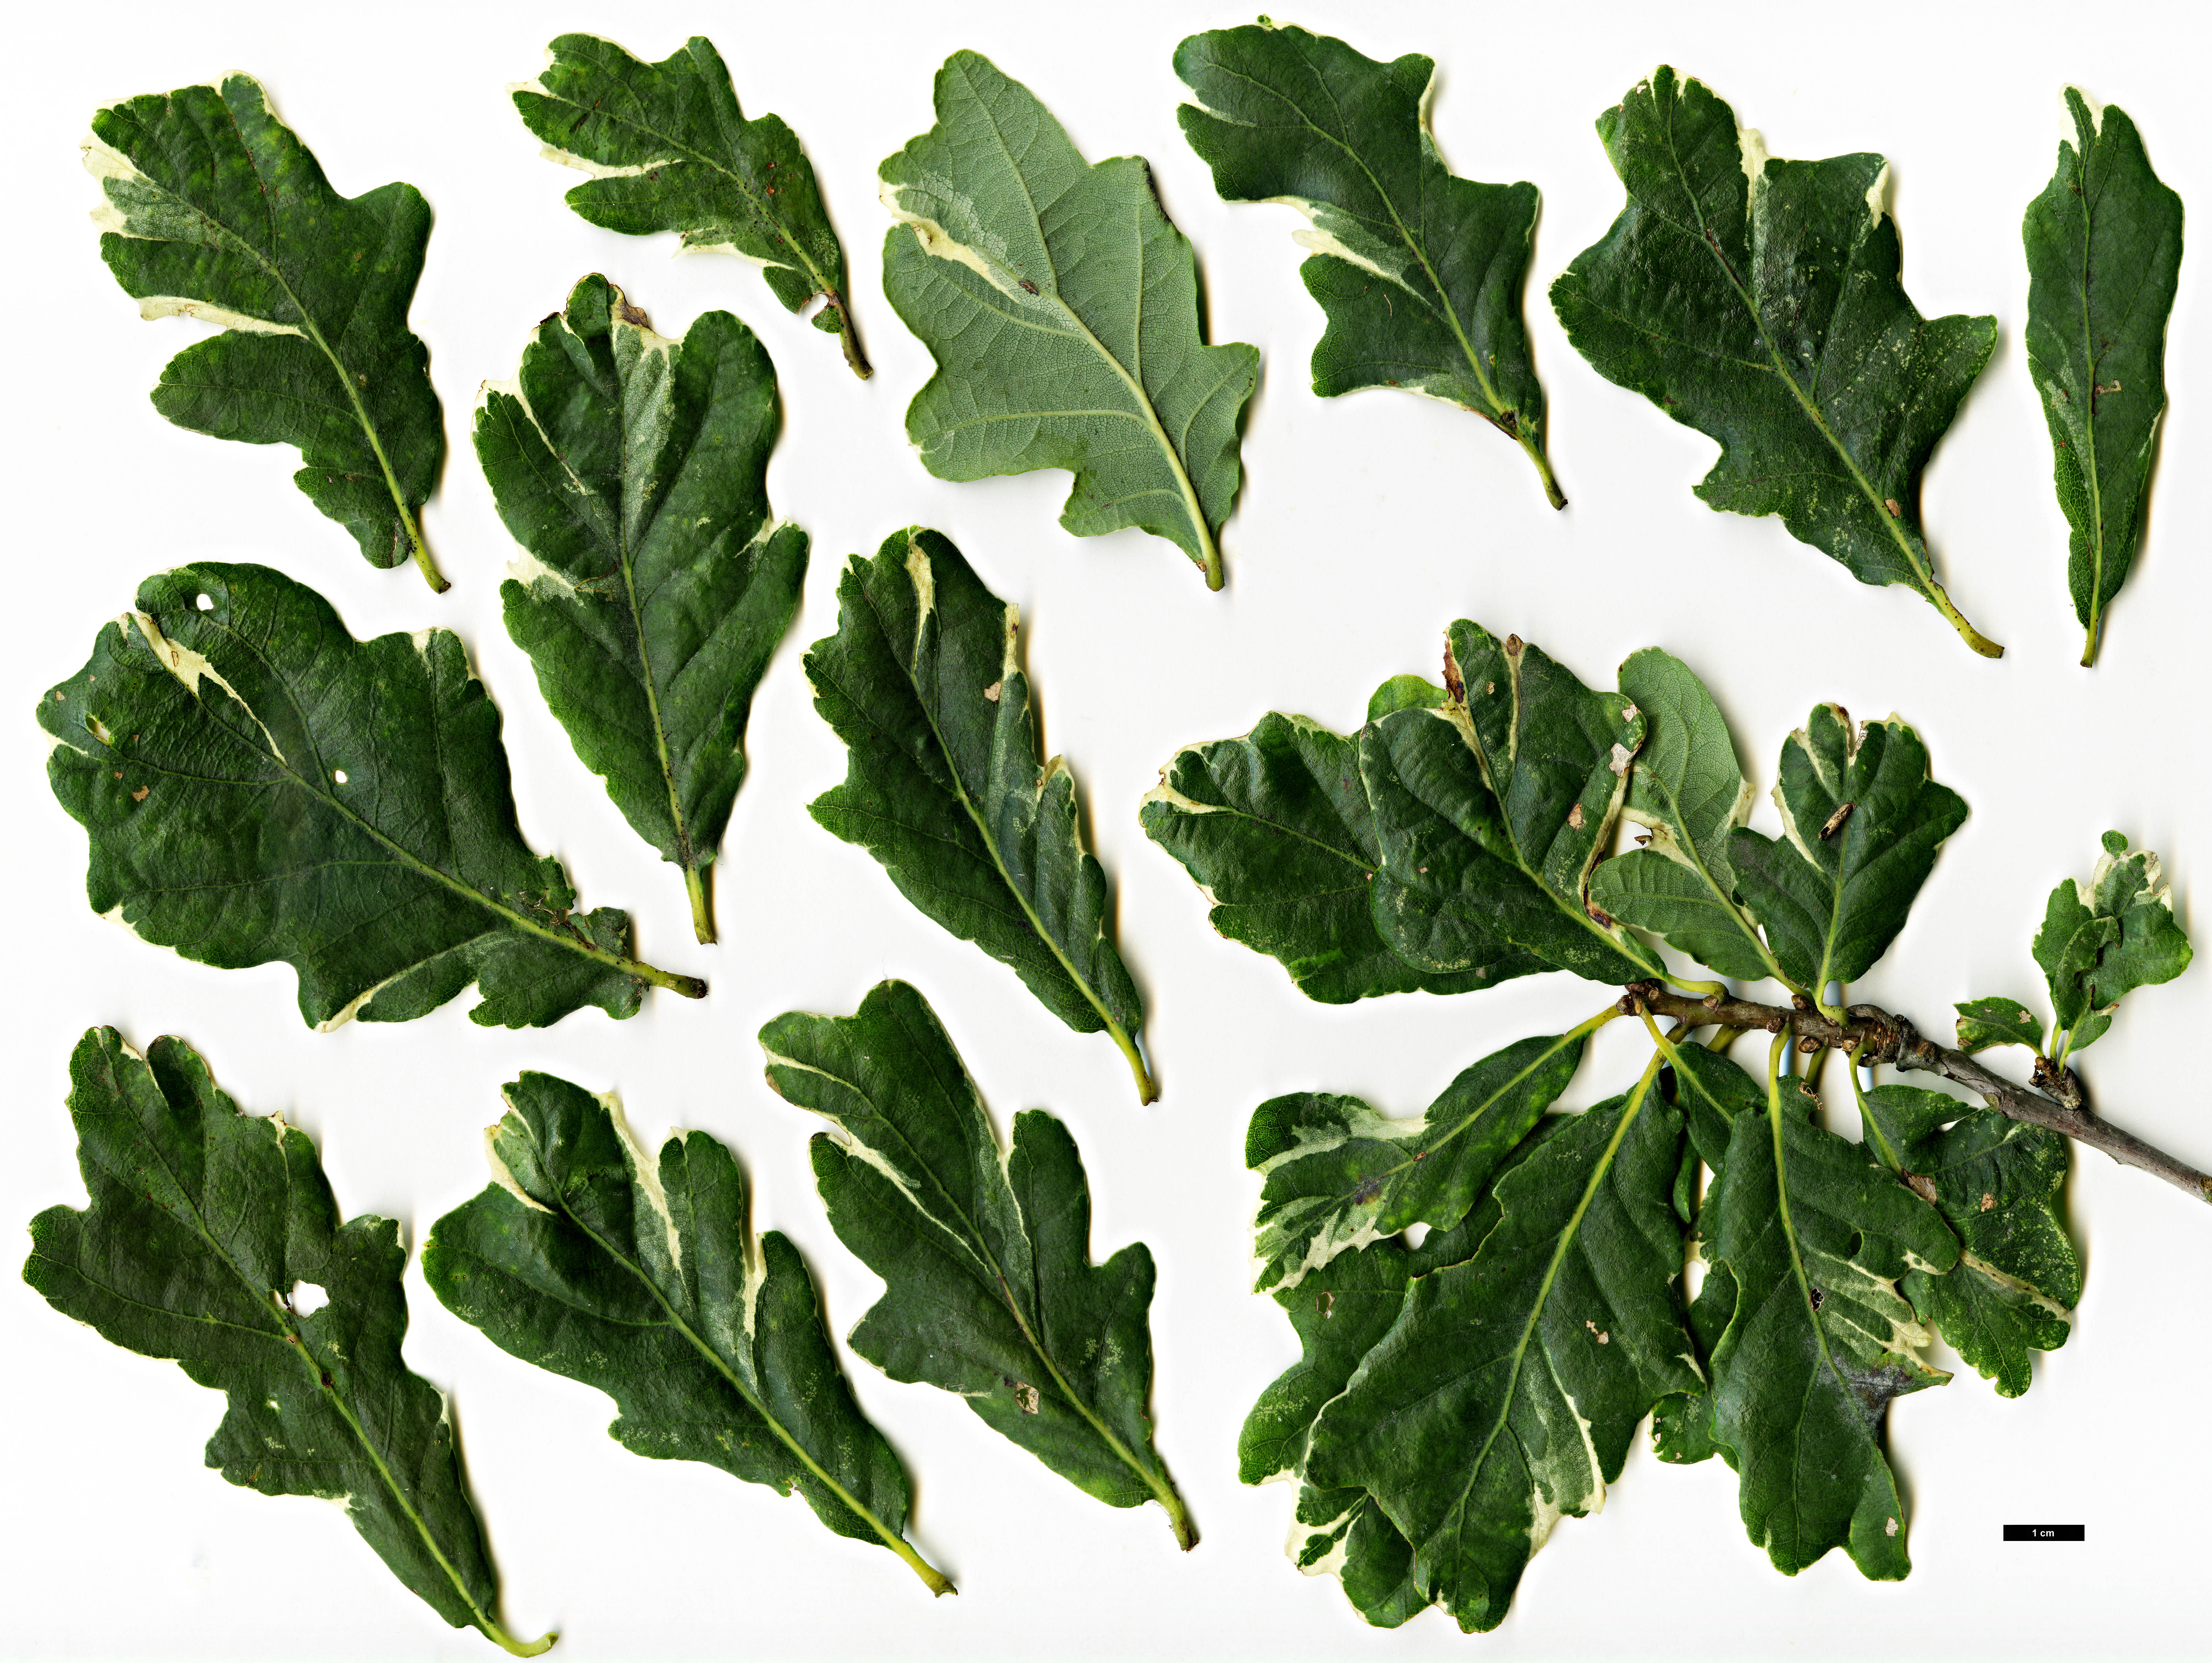 High resolution image: Family: Fagaceae - Genus: Quercus - Taxon: robur - SpeciesSub: 'Argenteomarginata'